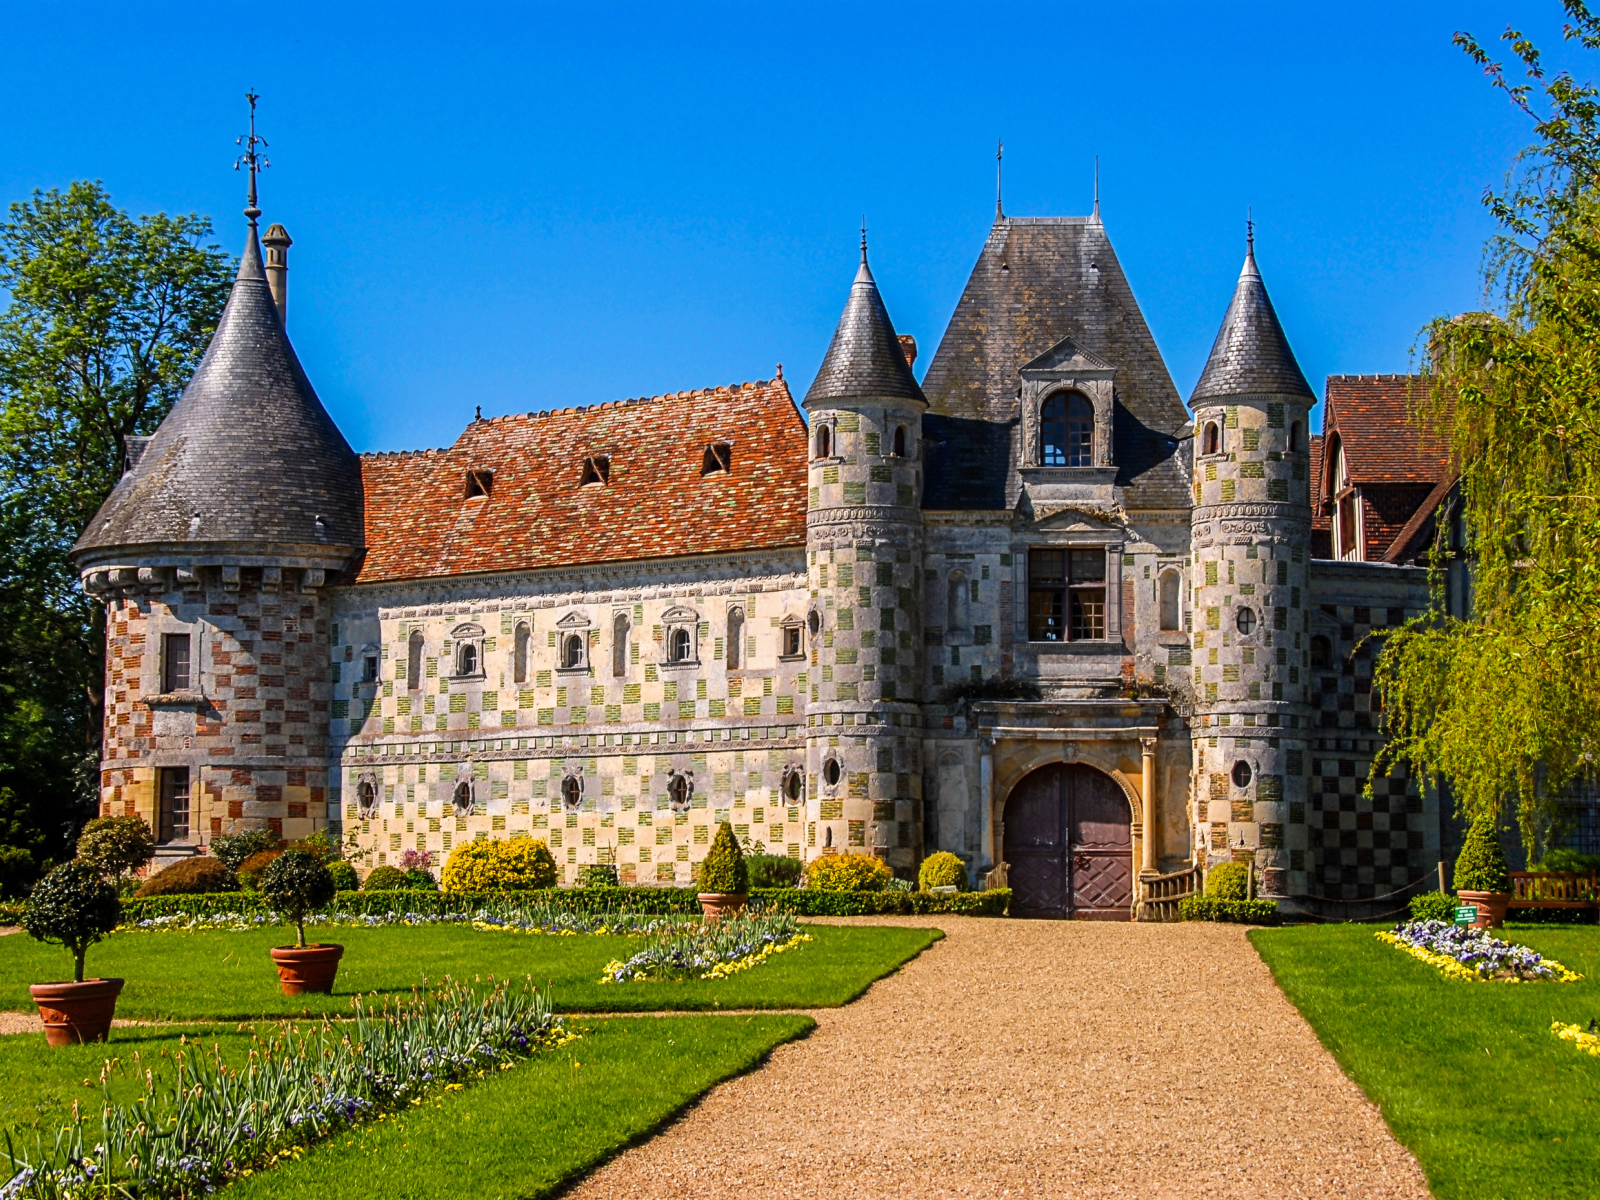 Замок Chateau de St Germain de Livet с зеленым газоном, Франция